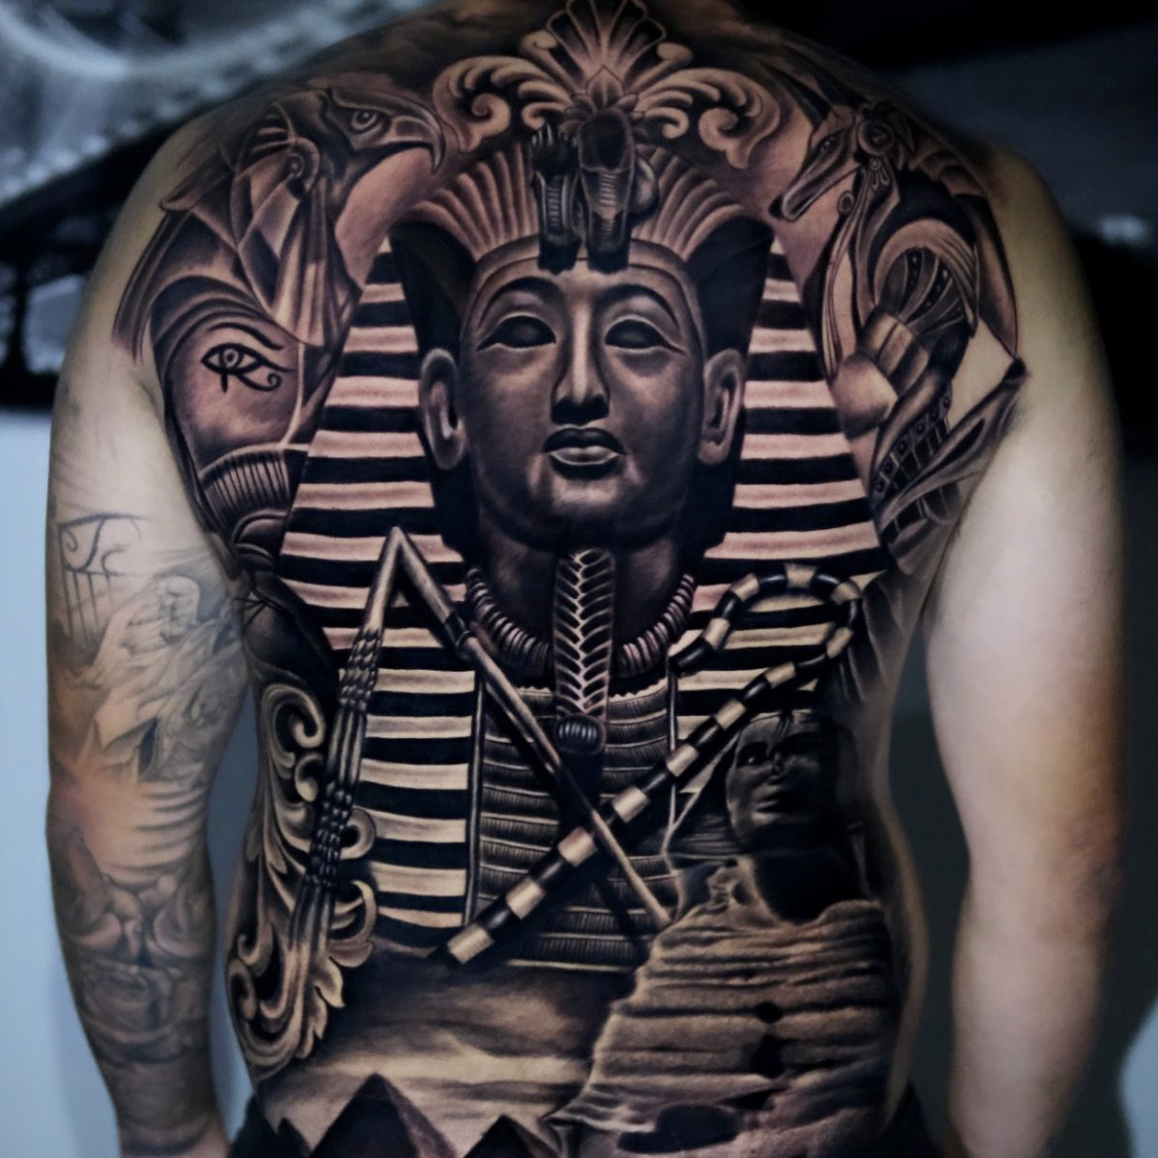 Wizz tattoo Bali